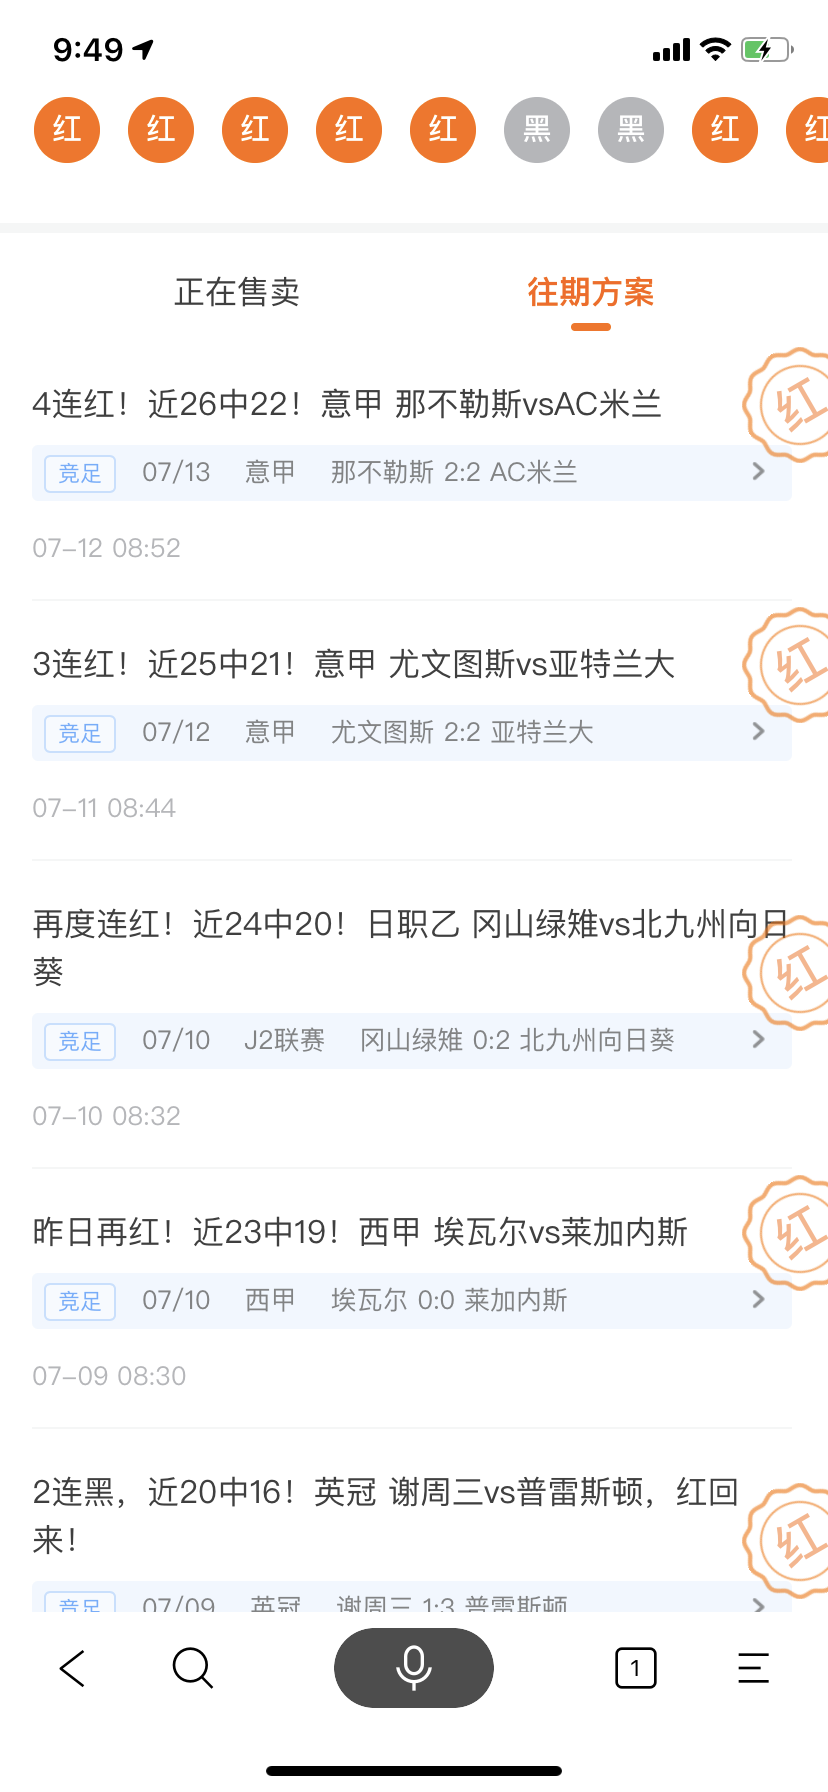 7月13日搜狐金彩红人榜：常胜明9连红 张杰解盘近27中23